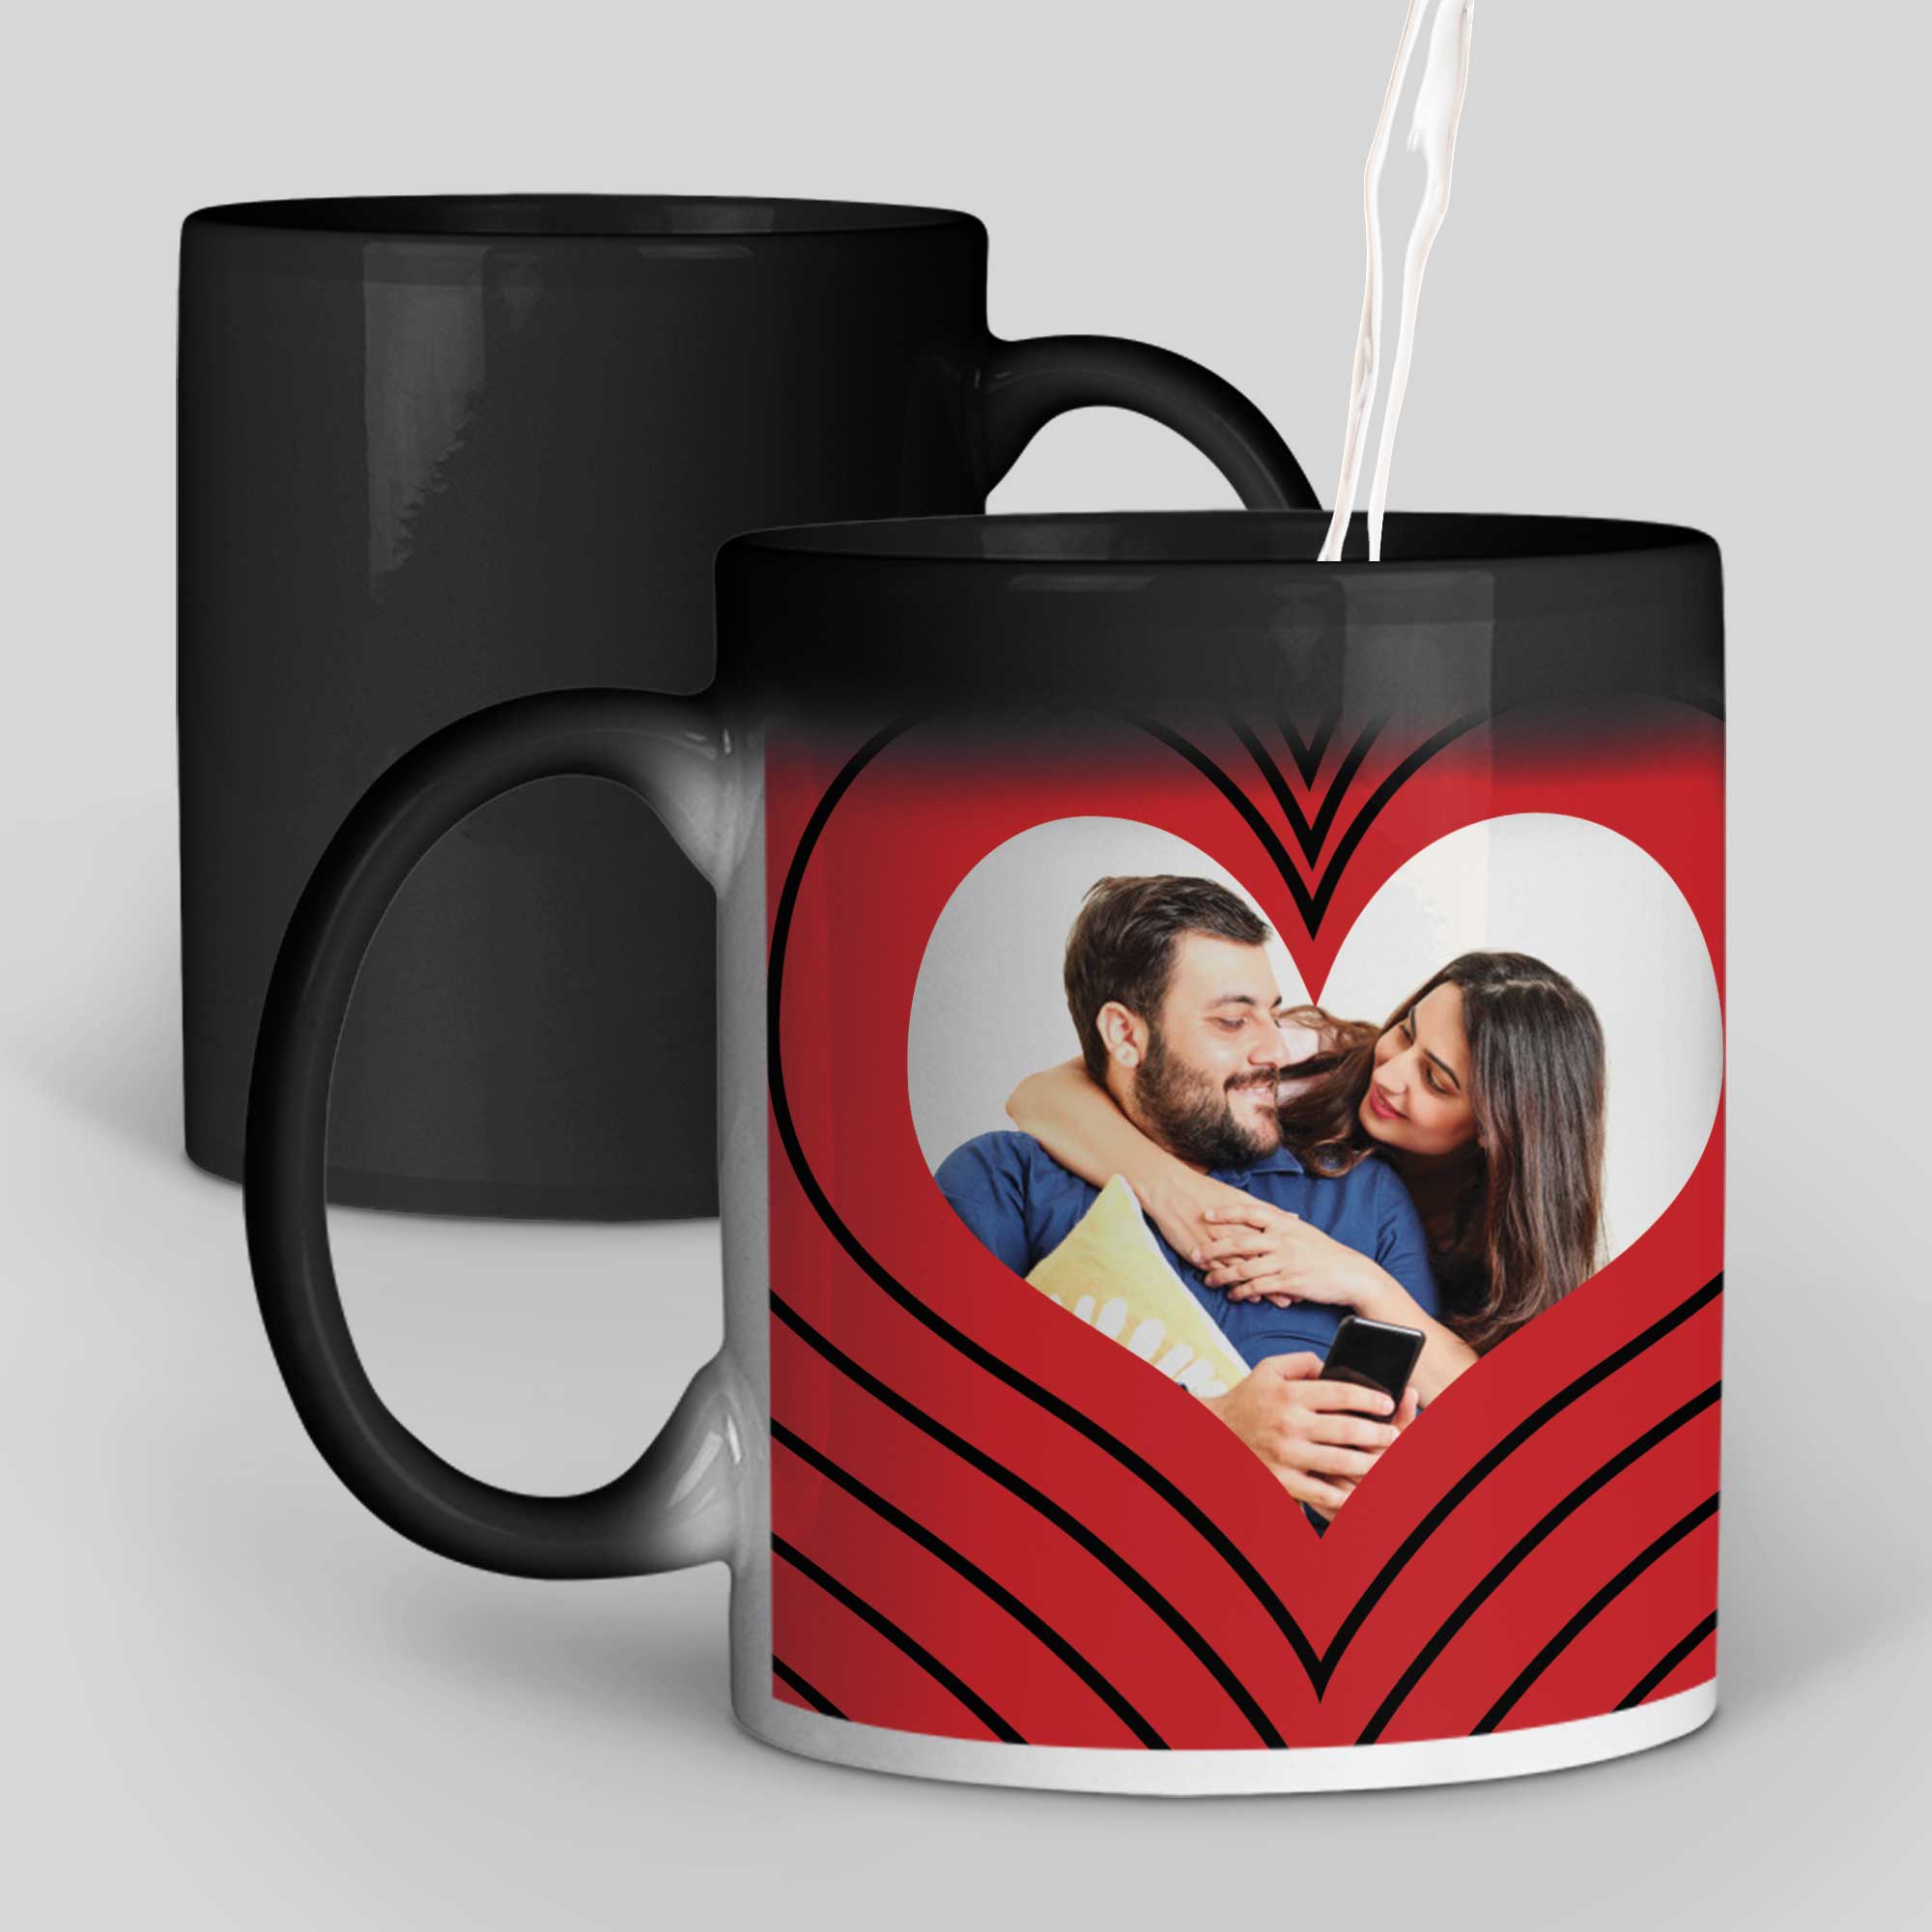 I Love You Personalized Magic Mug